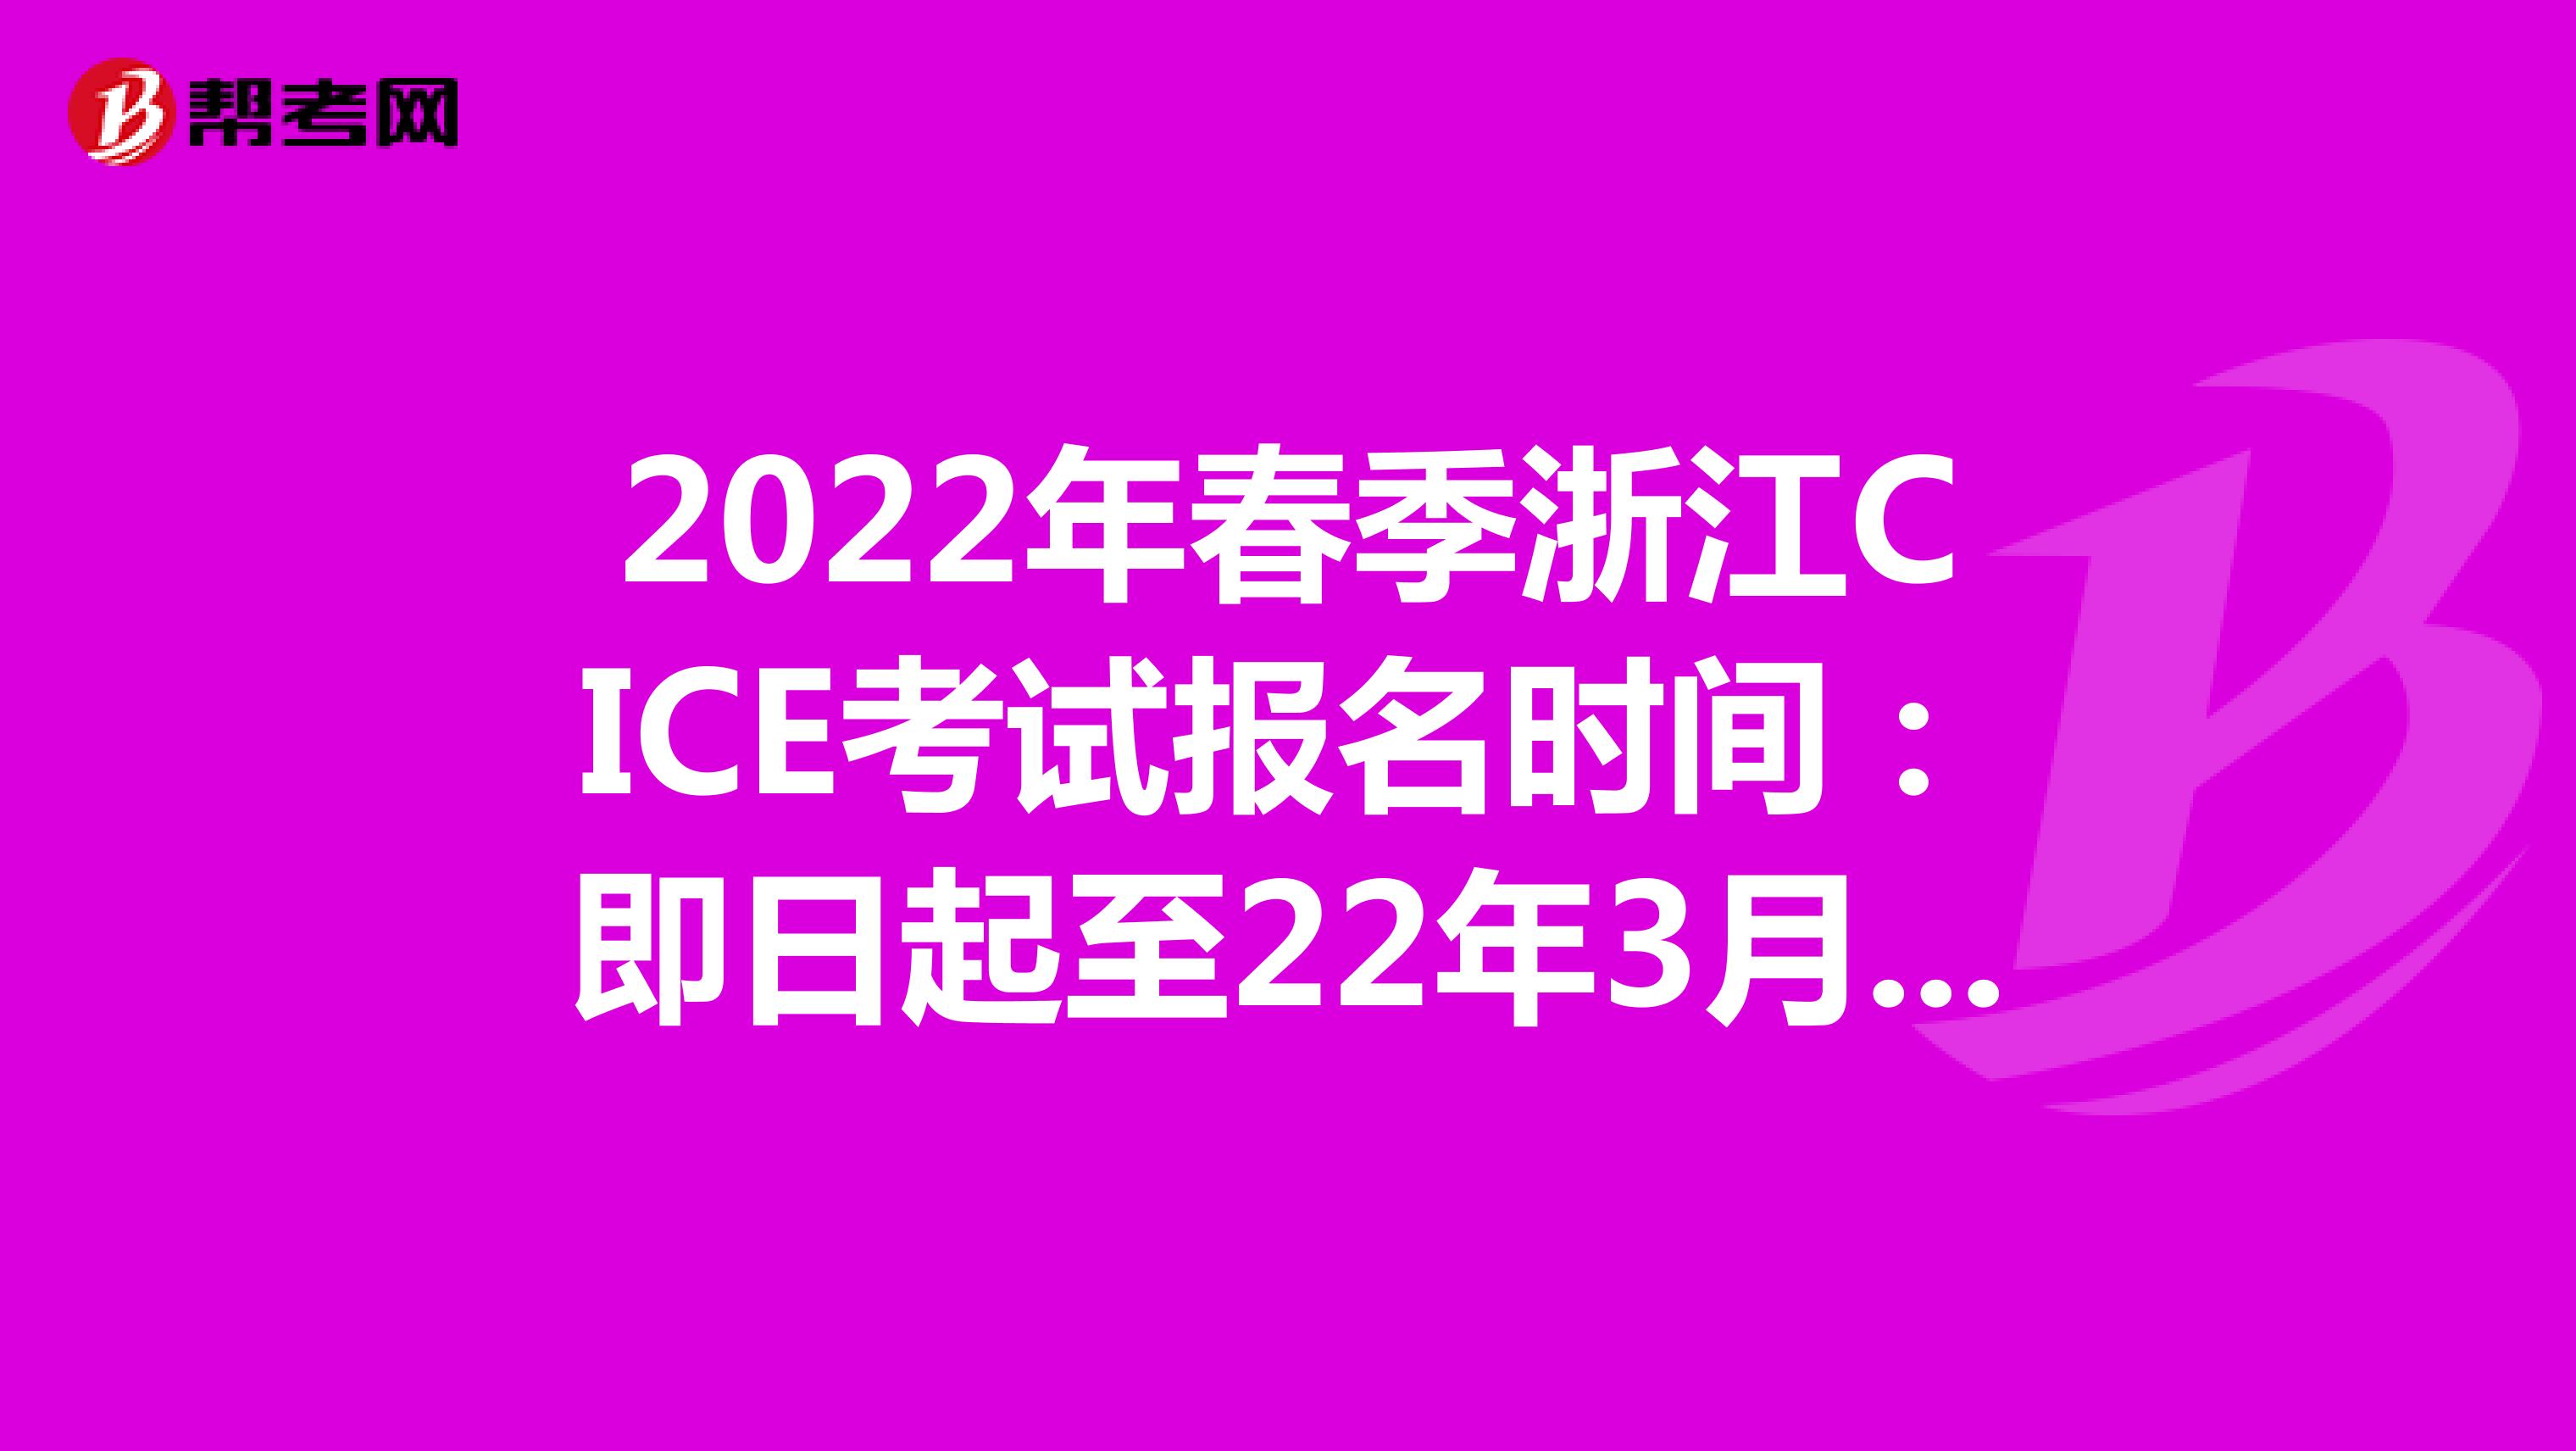 2022年春季浙江CICE考试报名时间：即日起至22年3月31日